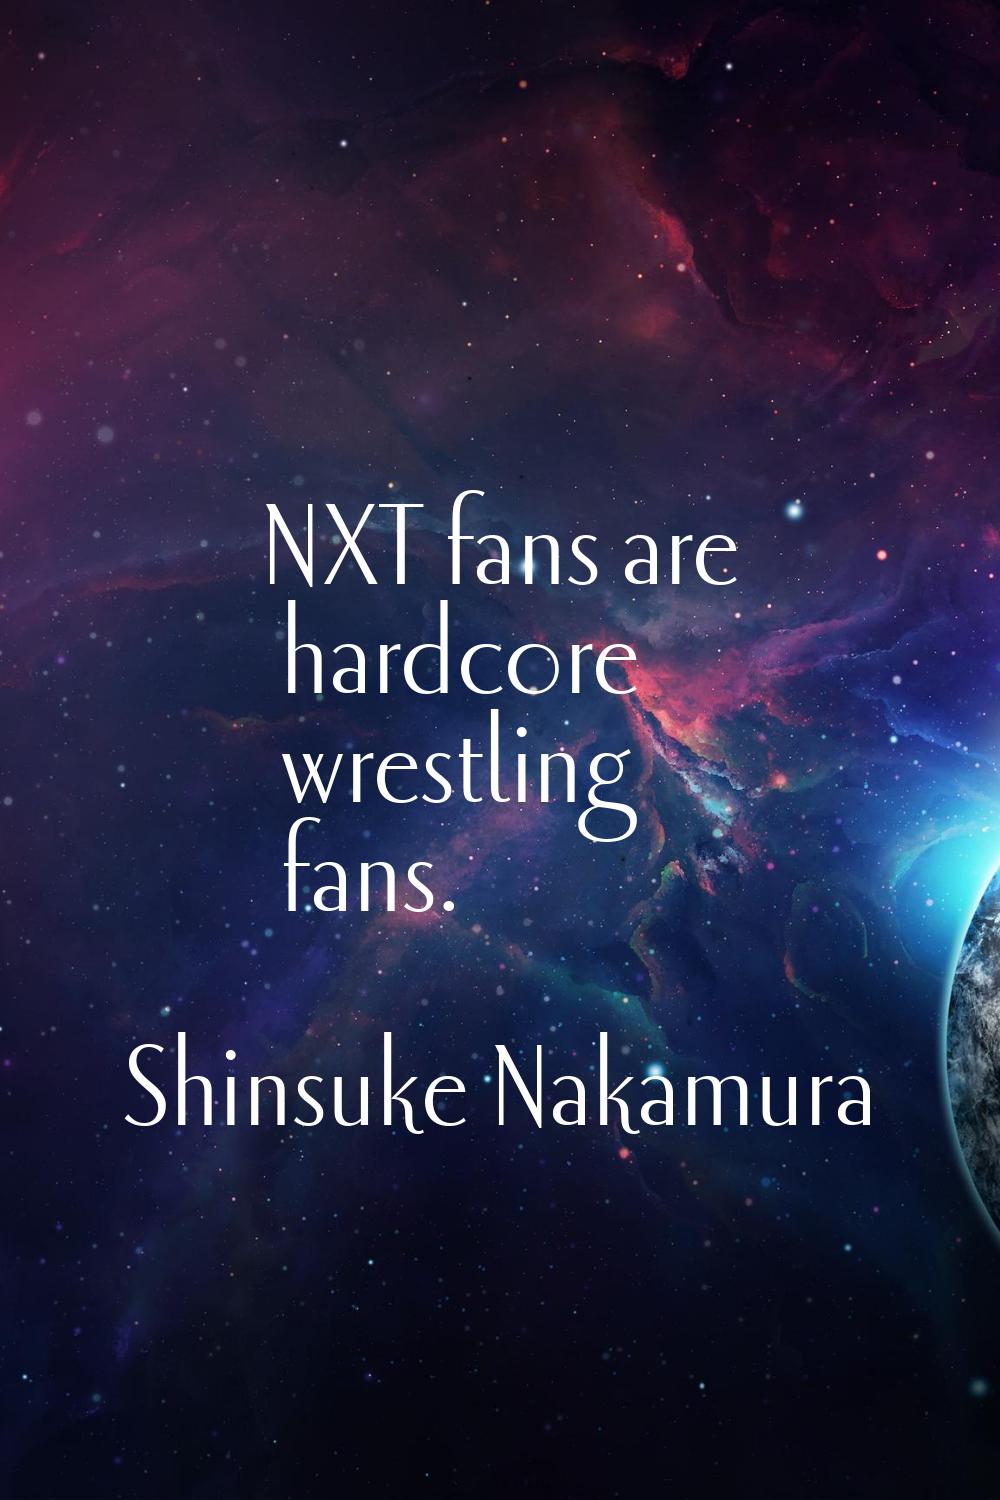 NXT fans are hardcore wrestling fans.